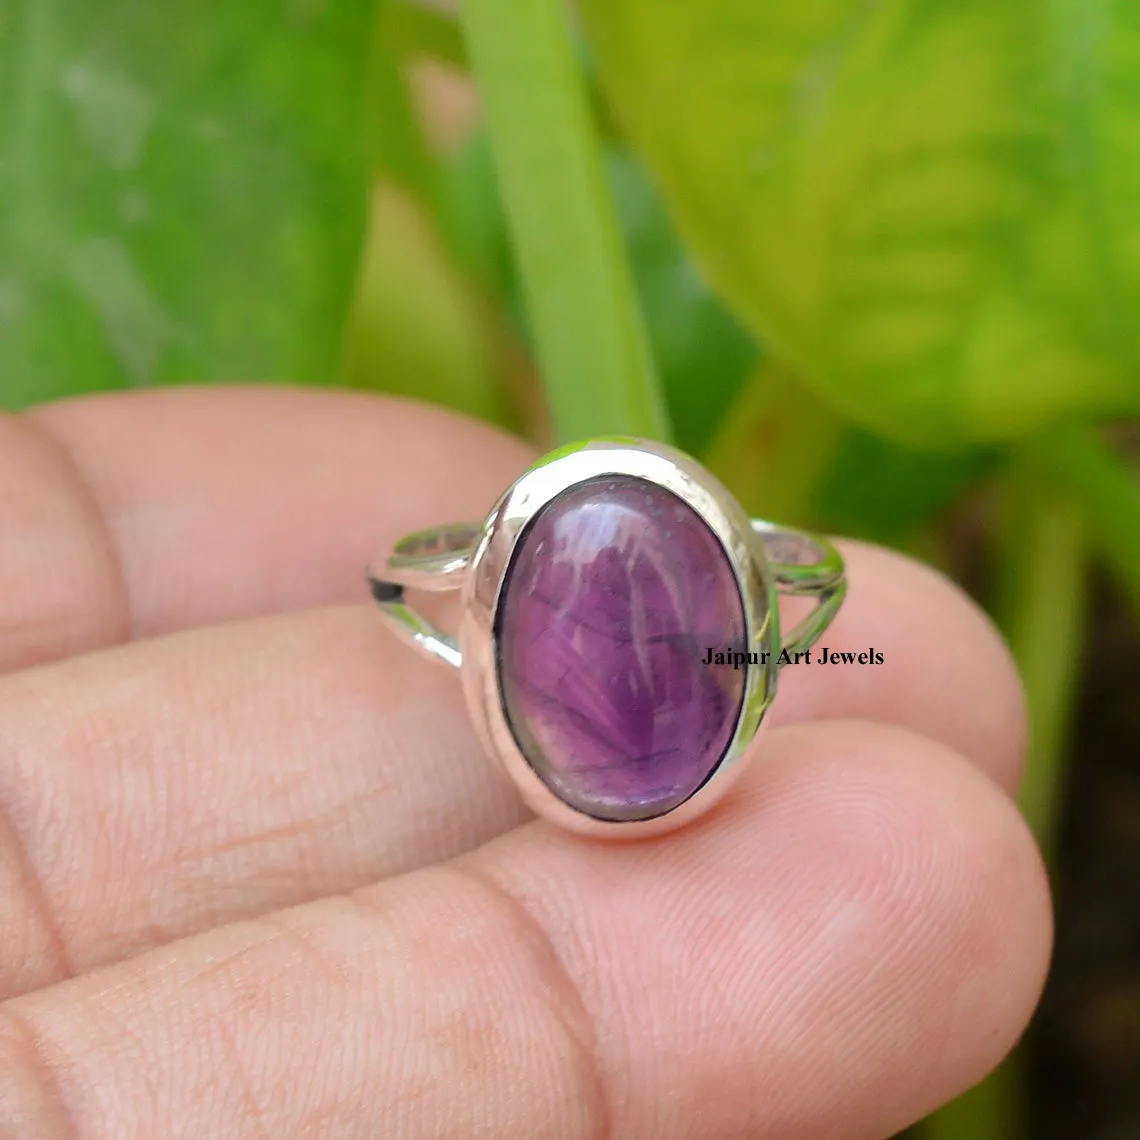 Increíble superventas 925 joyería hecha a mano de plata esterlina anillos de piedras preciosas de amatista púrpura genuina con joyería de precio razonable